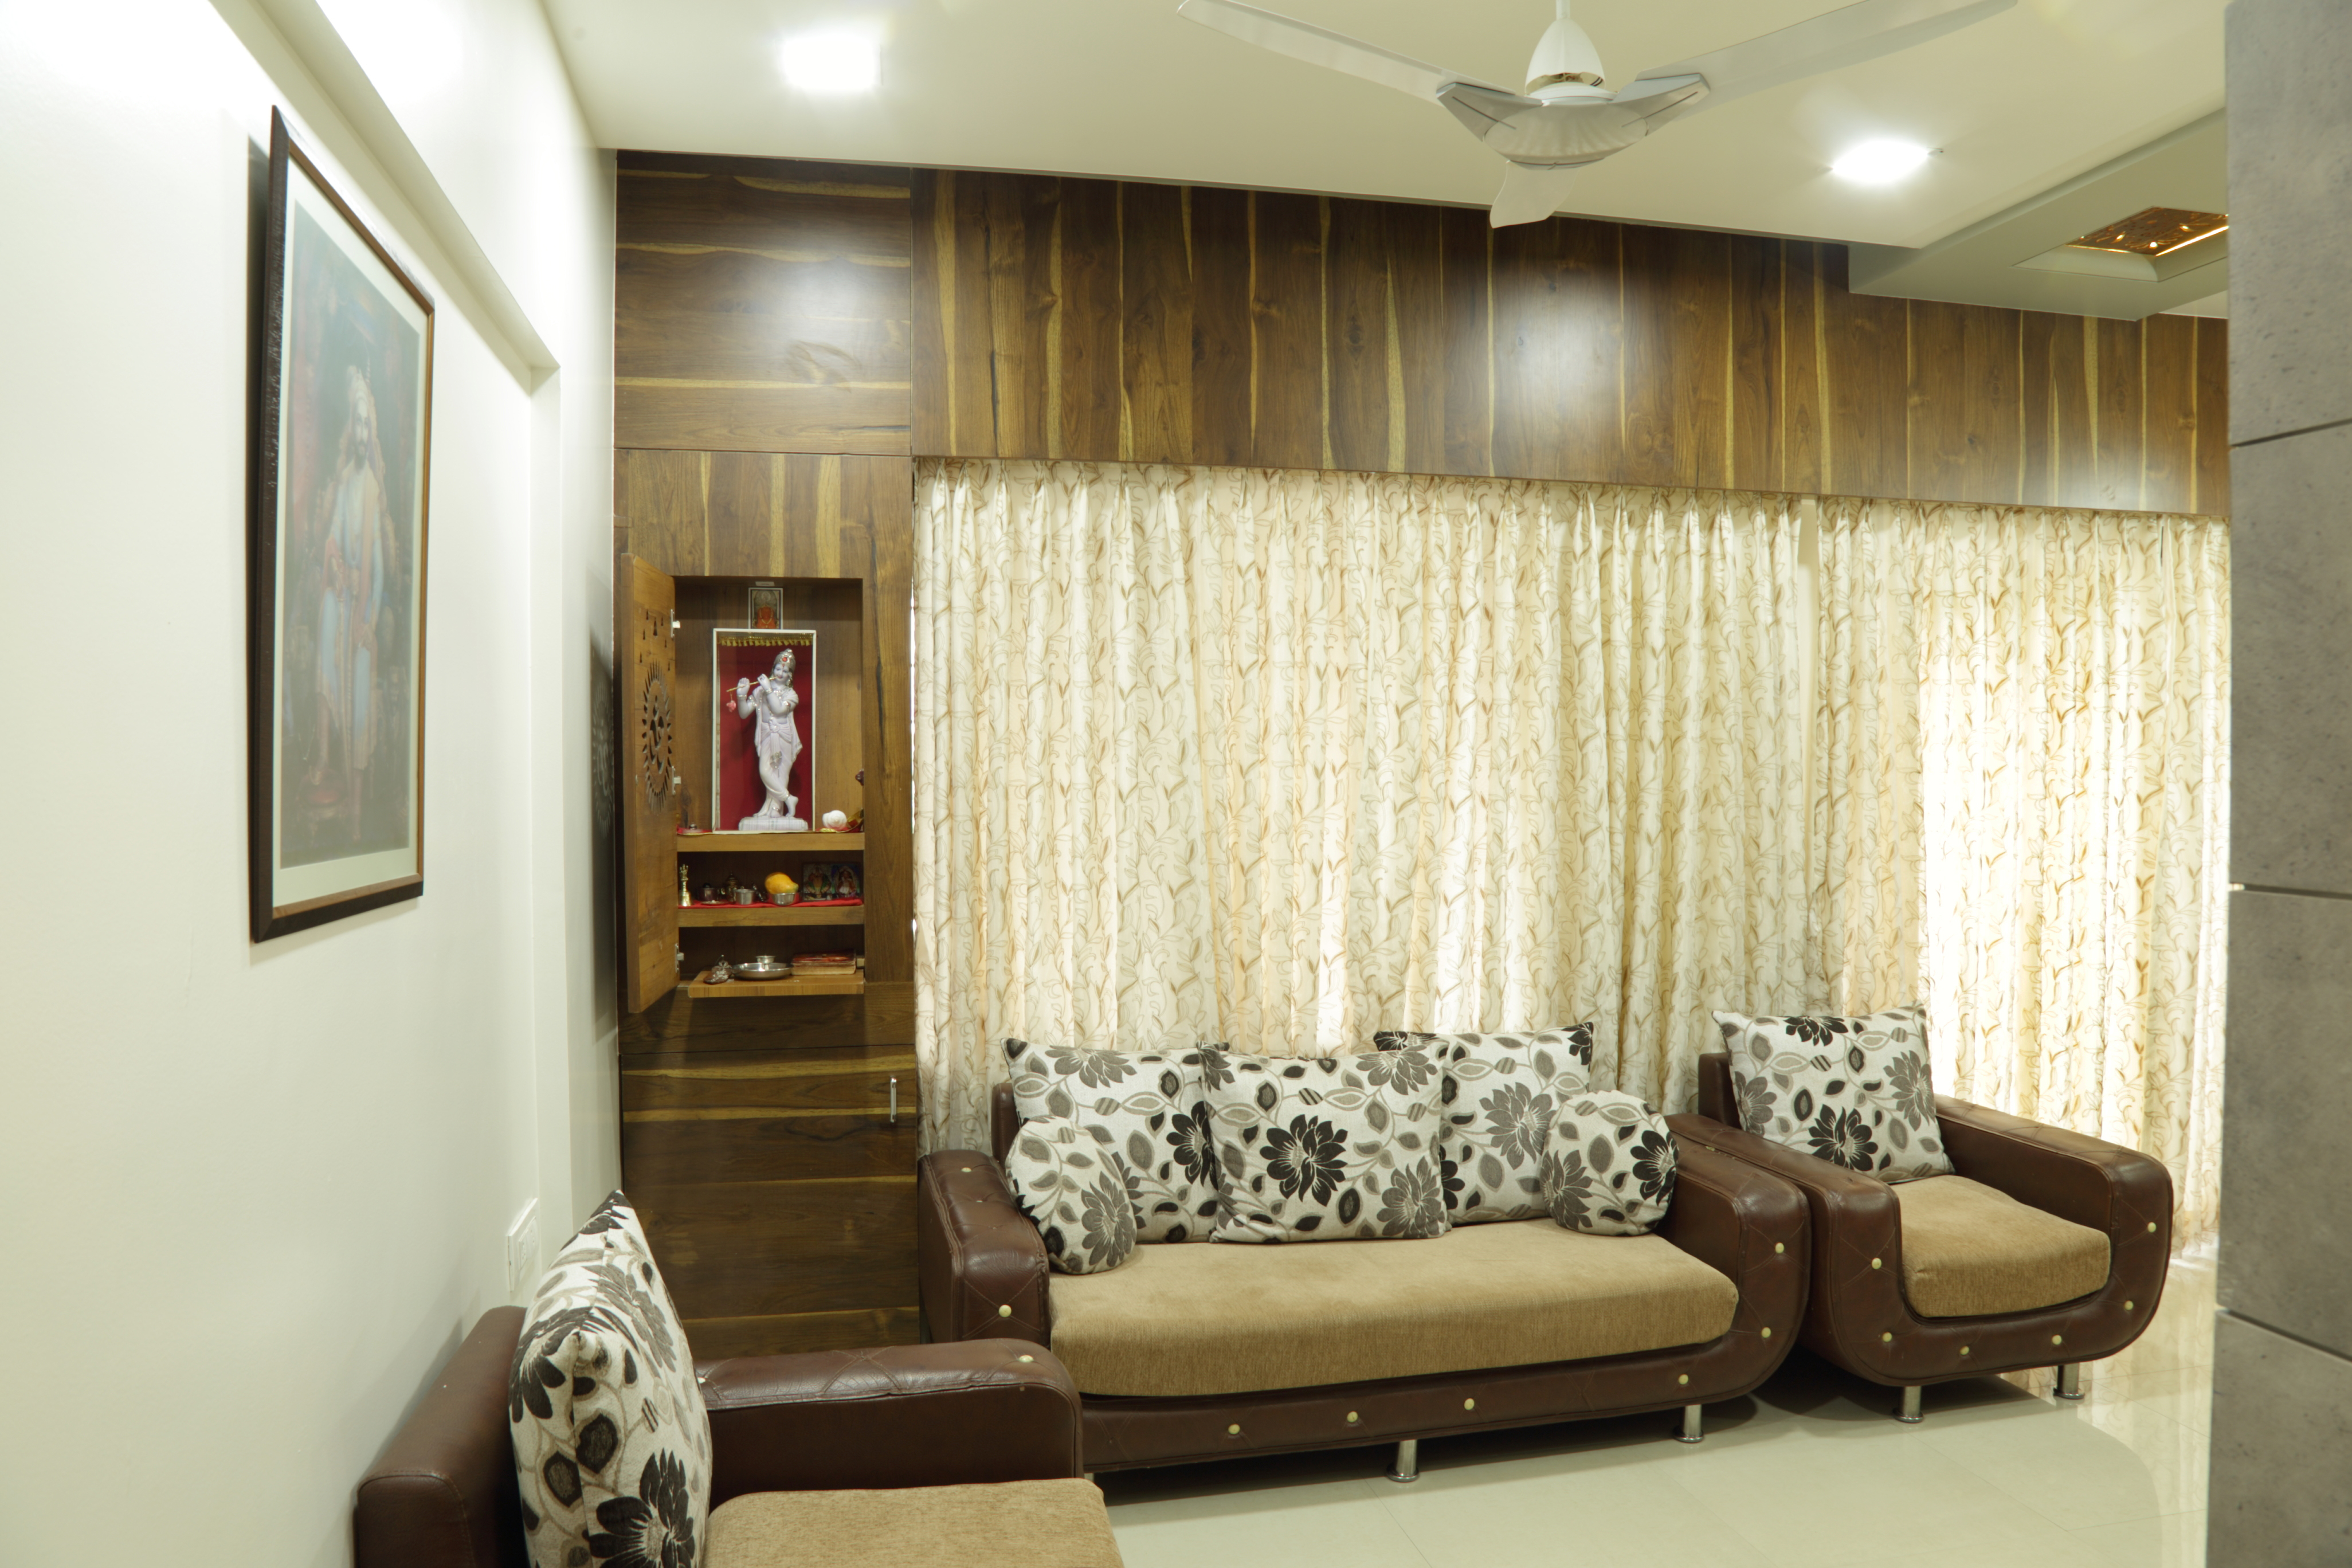 INTERIOR DESIGNERS - HOME INTERIOR DESIGNERS  -  HOUSE  INTERIOR  DESIGNER - BANGLOW INTERIOR IN KALYANI NAGAR.  | Ghar Pe Service | House Interior Designer in kalyani nagar,  Home interior design in Kalyani nagar, Banglow interior designer in Kalyani Nagar,  Office interior,  Residential Interior Designer in kalyani nagar  - GL63329